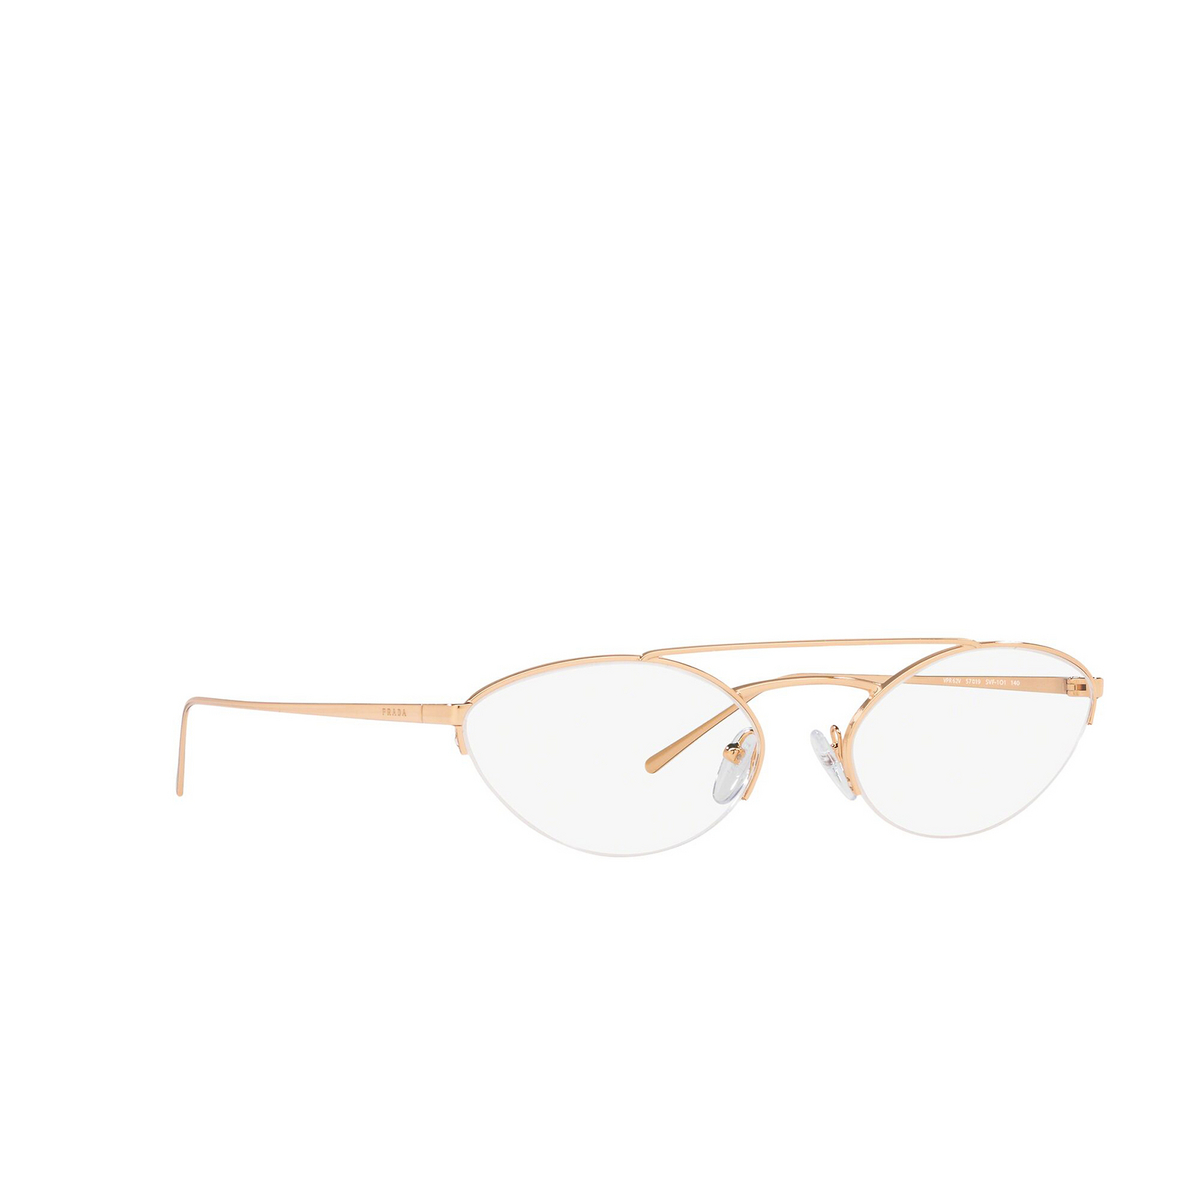 Prada® Oval Eyeglasses: Catwalk PR 62VV color Pink Gold SVF1O1 - three-quarters view.